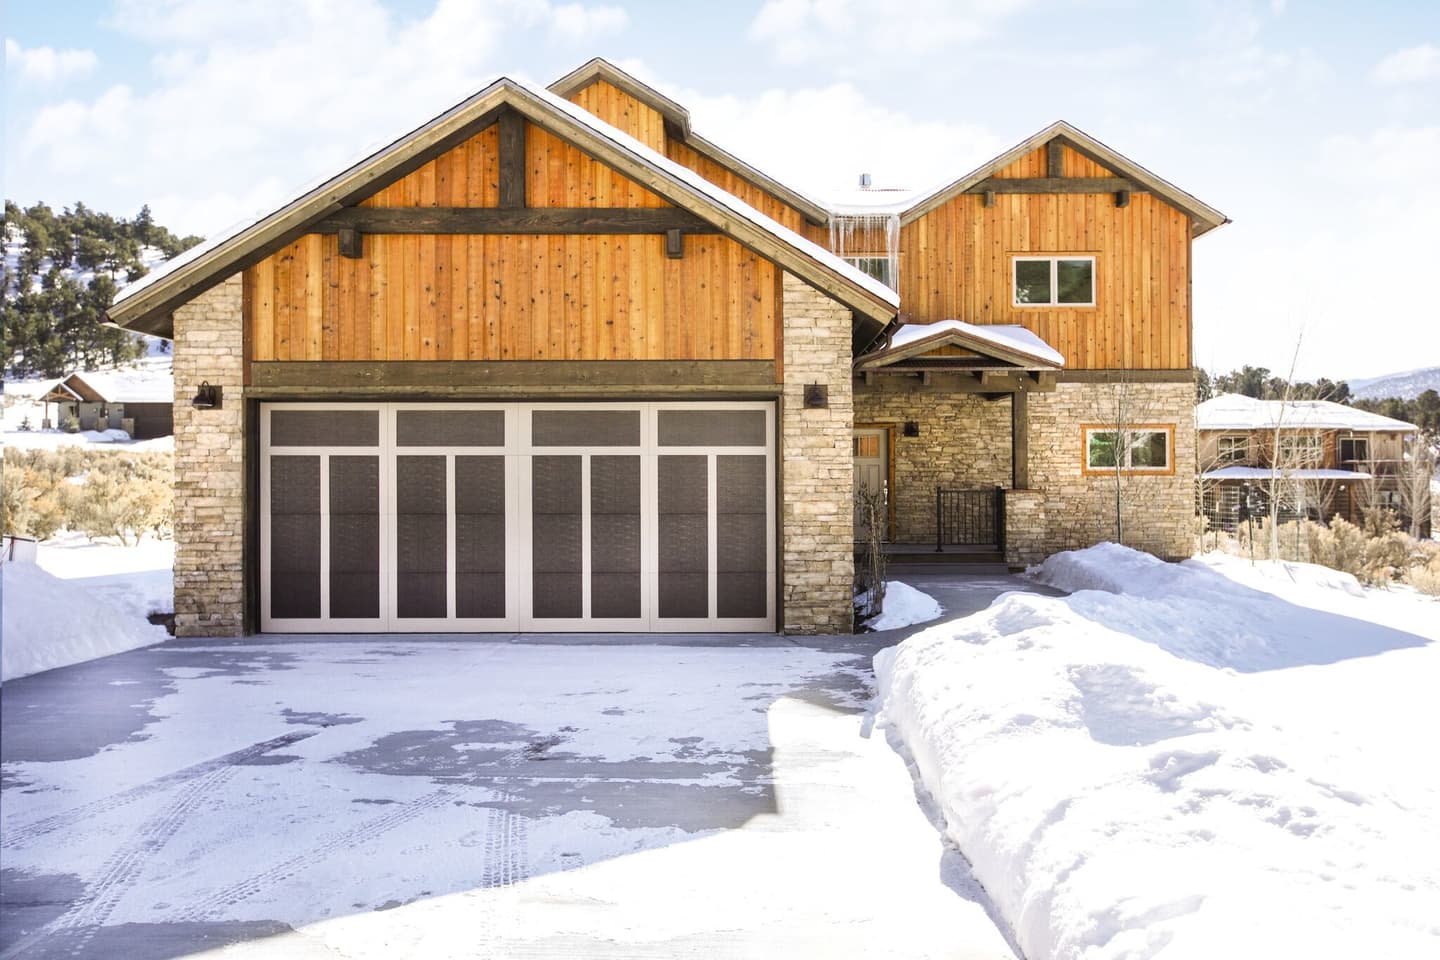 cabin-style-home-with-dark-wood-garage-door-in-the-winter.jpg?mtime=20181123162328#asset:10857:c1440xauto